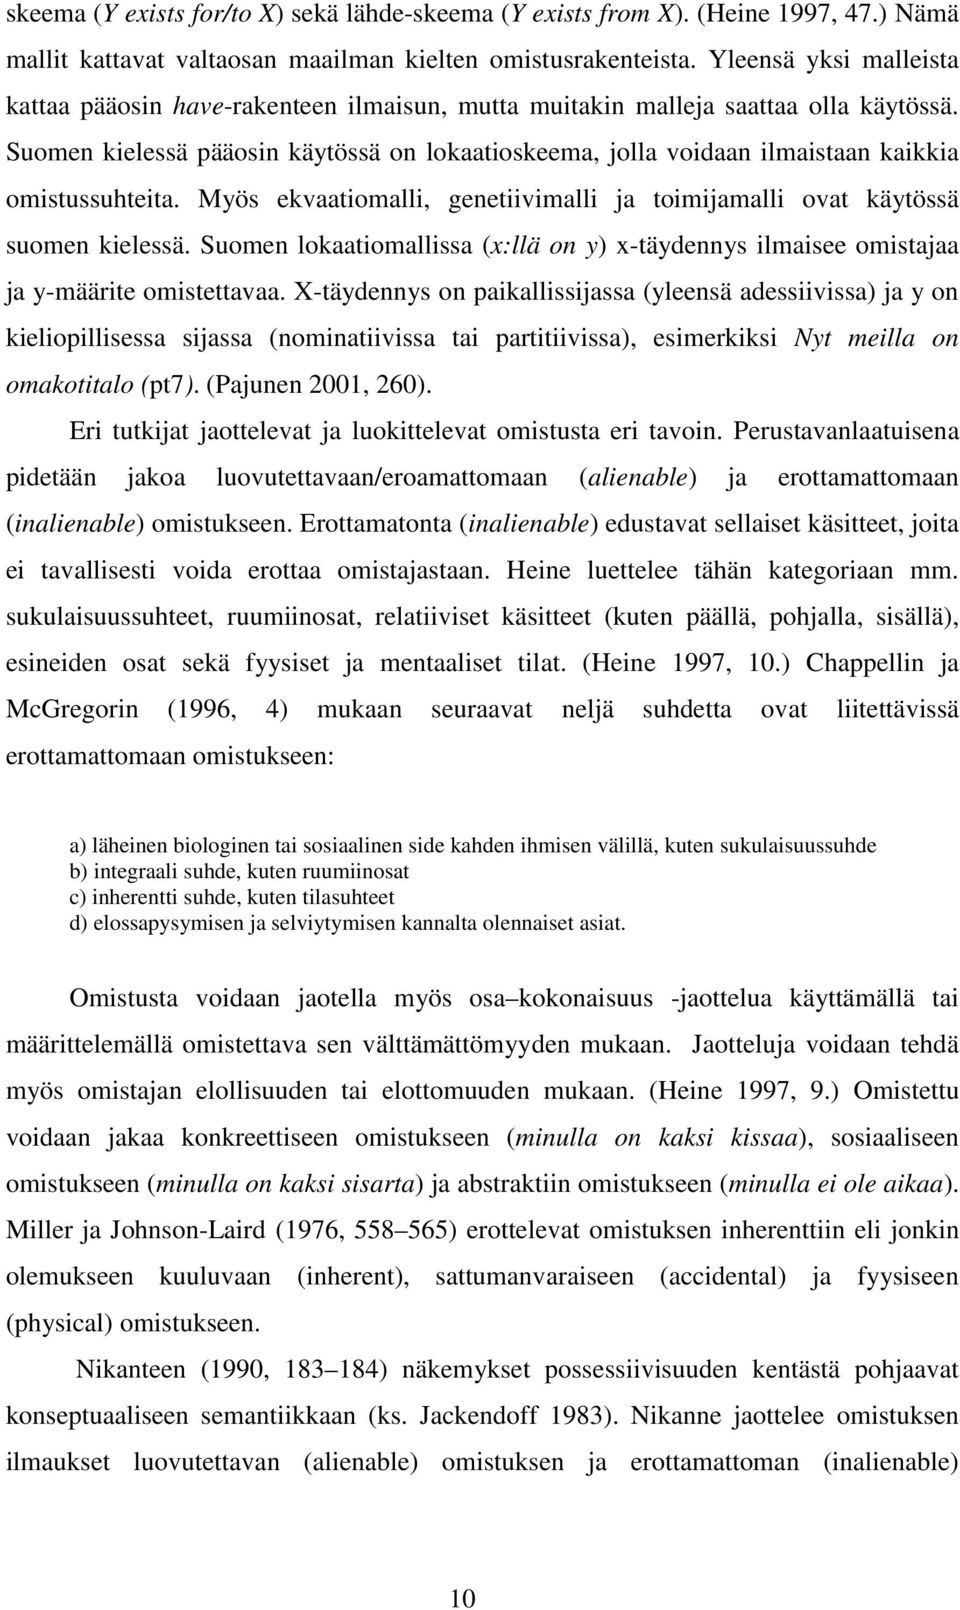 Suomen kielessä pääosin käytössä on lokaatioskeema, jolla voidaan ilmaistaan kaikkia omistussuhteita. Myös ekvaatiomalli, genetiivimalli ja toimijamalli ovat käytössä suomen kielessä.